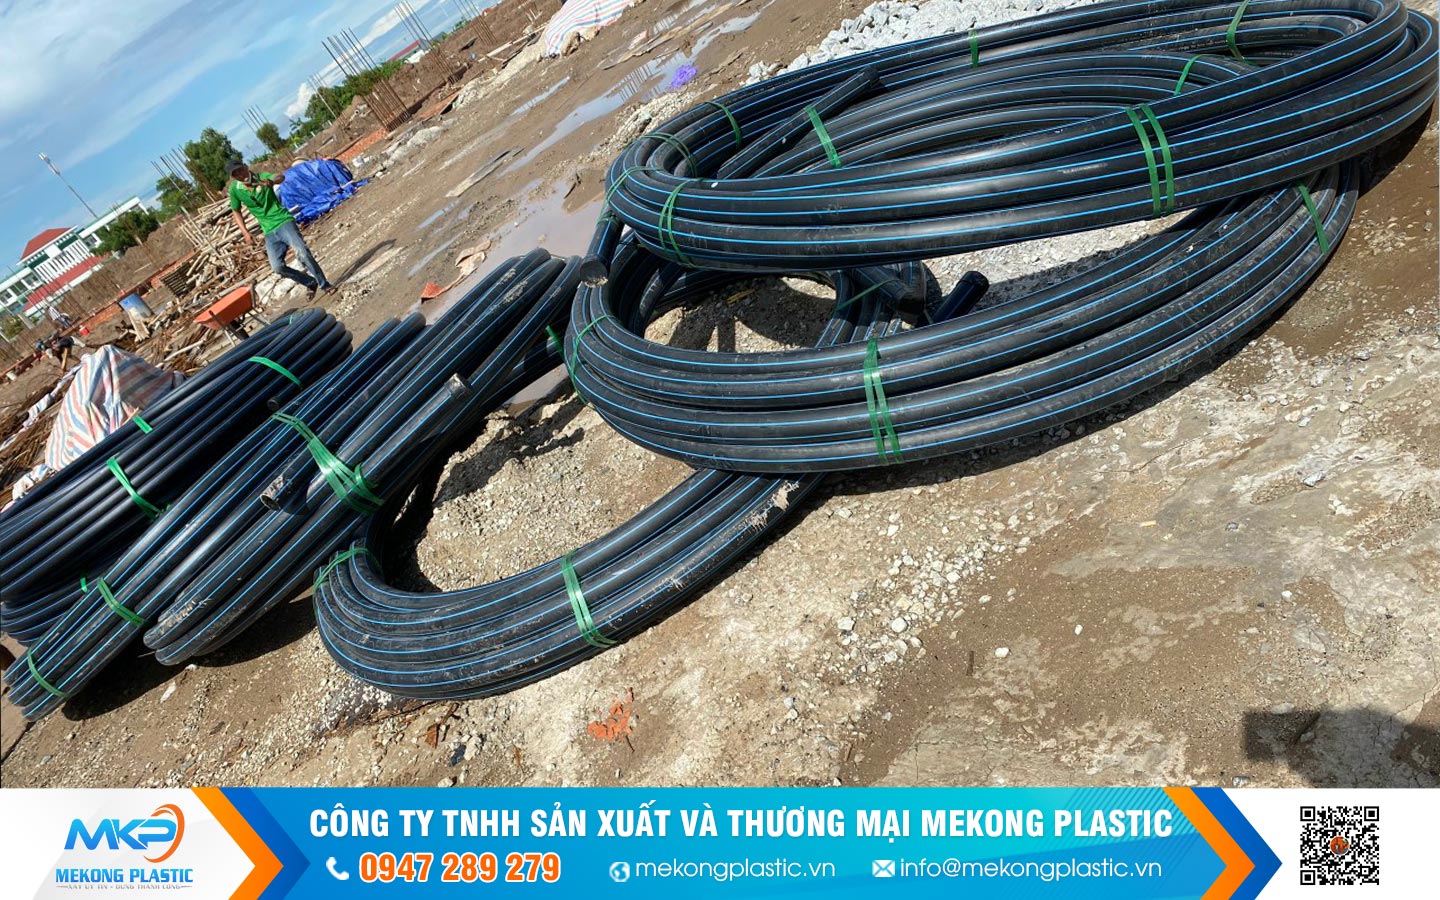 Mua ống nhựa HDPE tại Bắc Giang phục vụ cho hệ thống tưới tiêu nông nghiệp